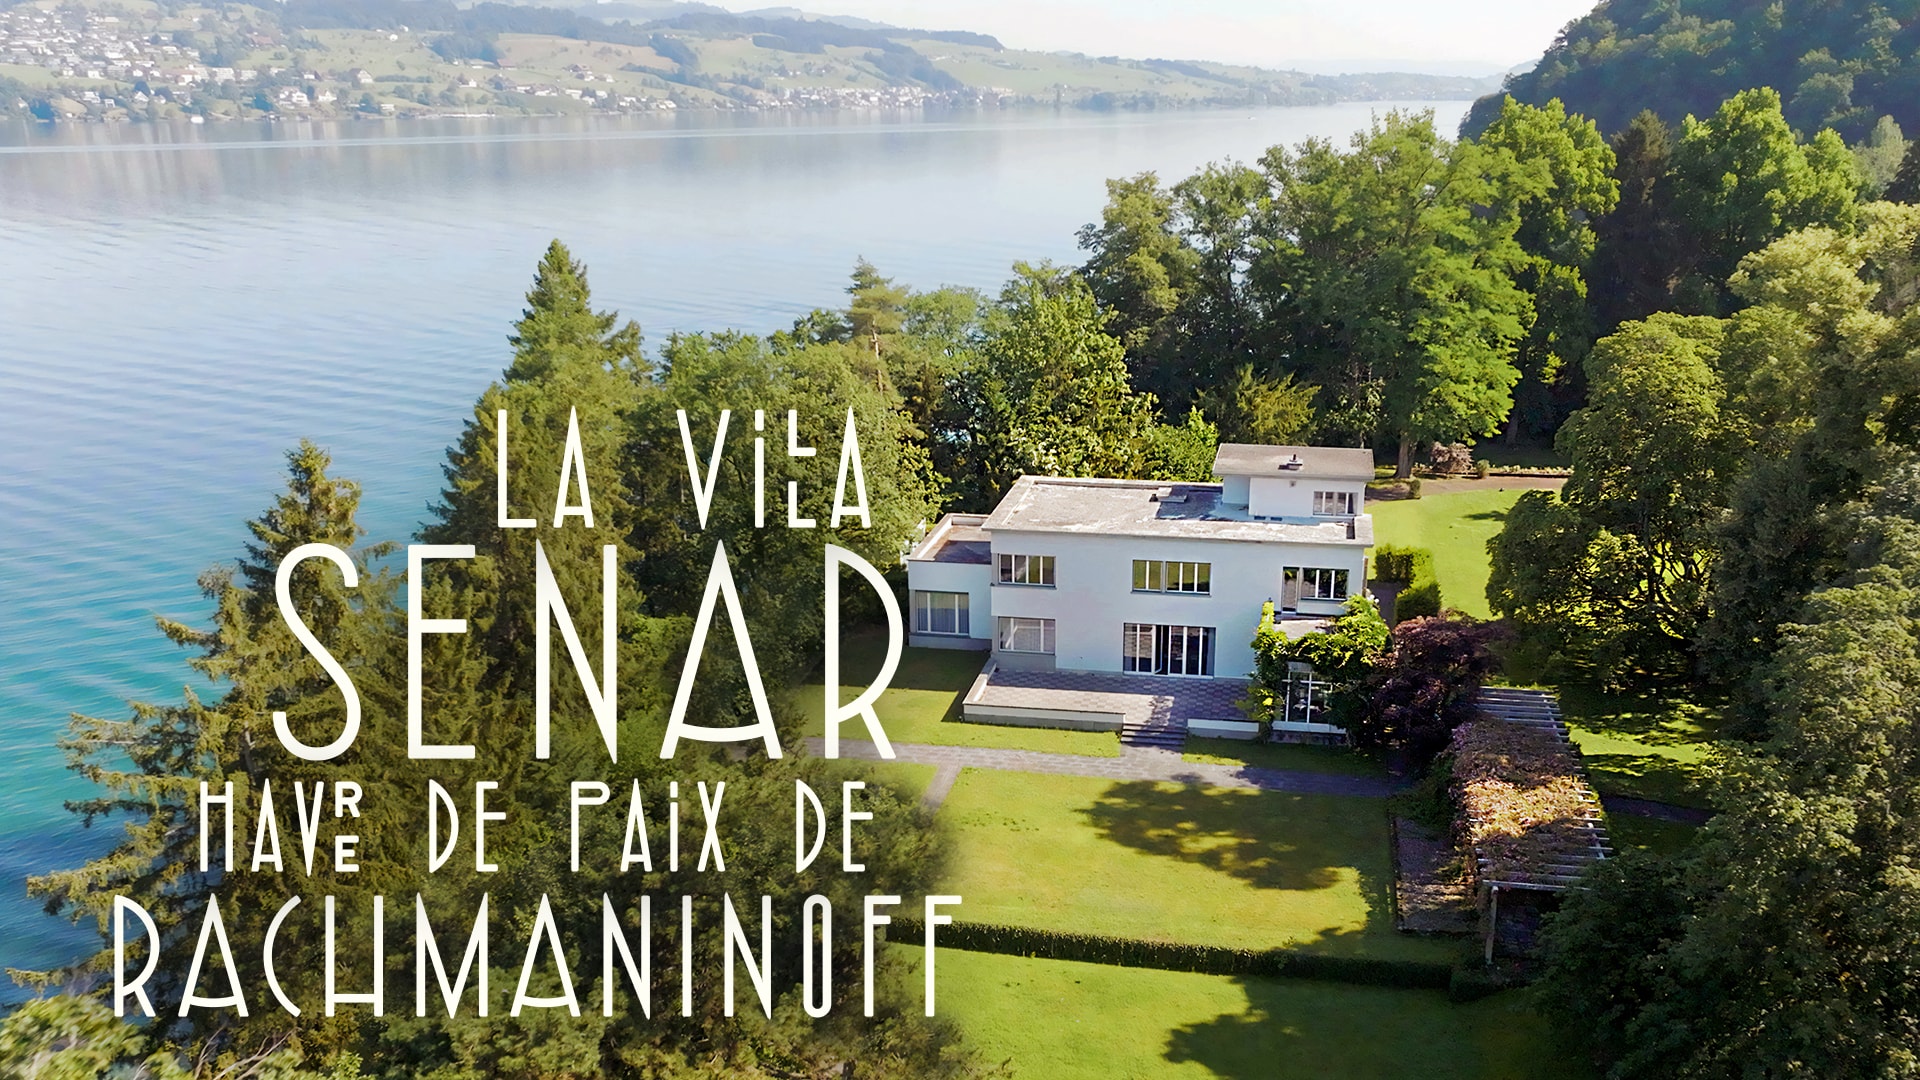 La Villa Senar, havre de paix de Rachmaninoff